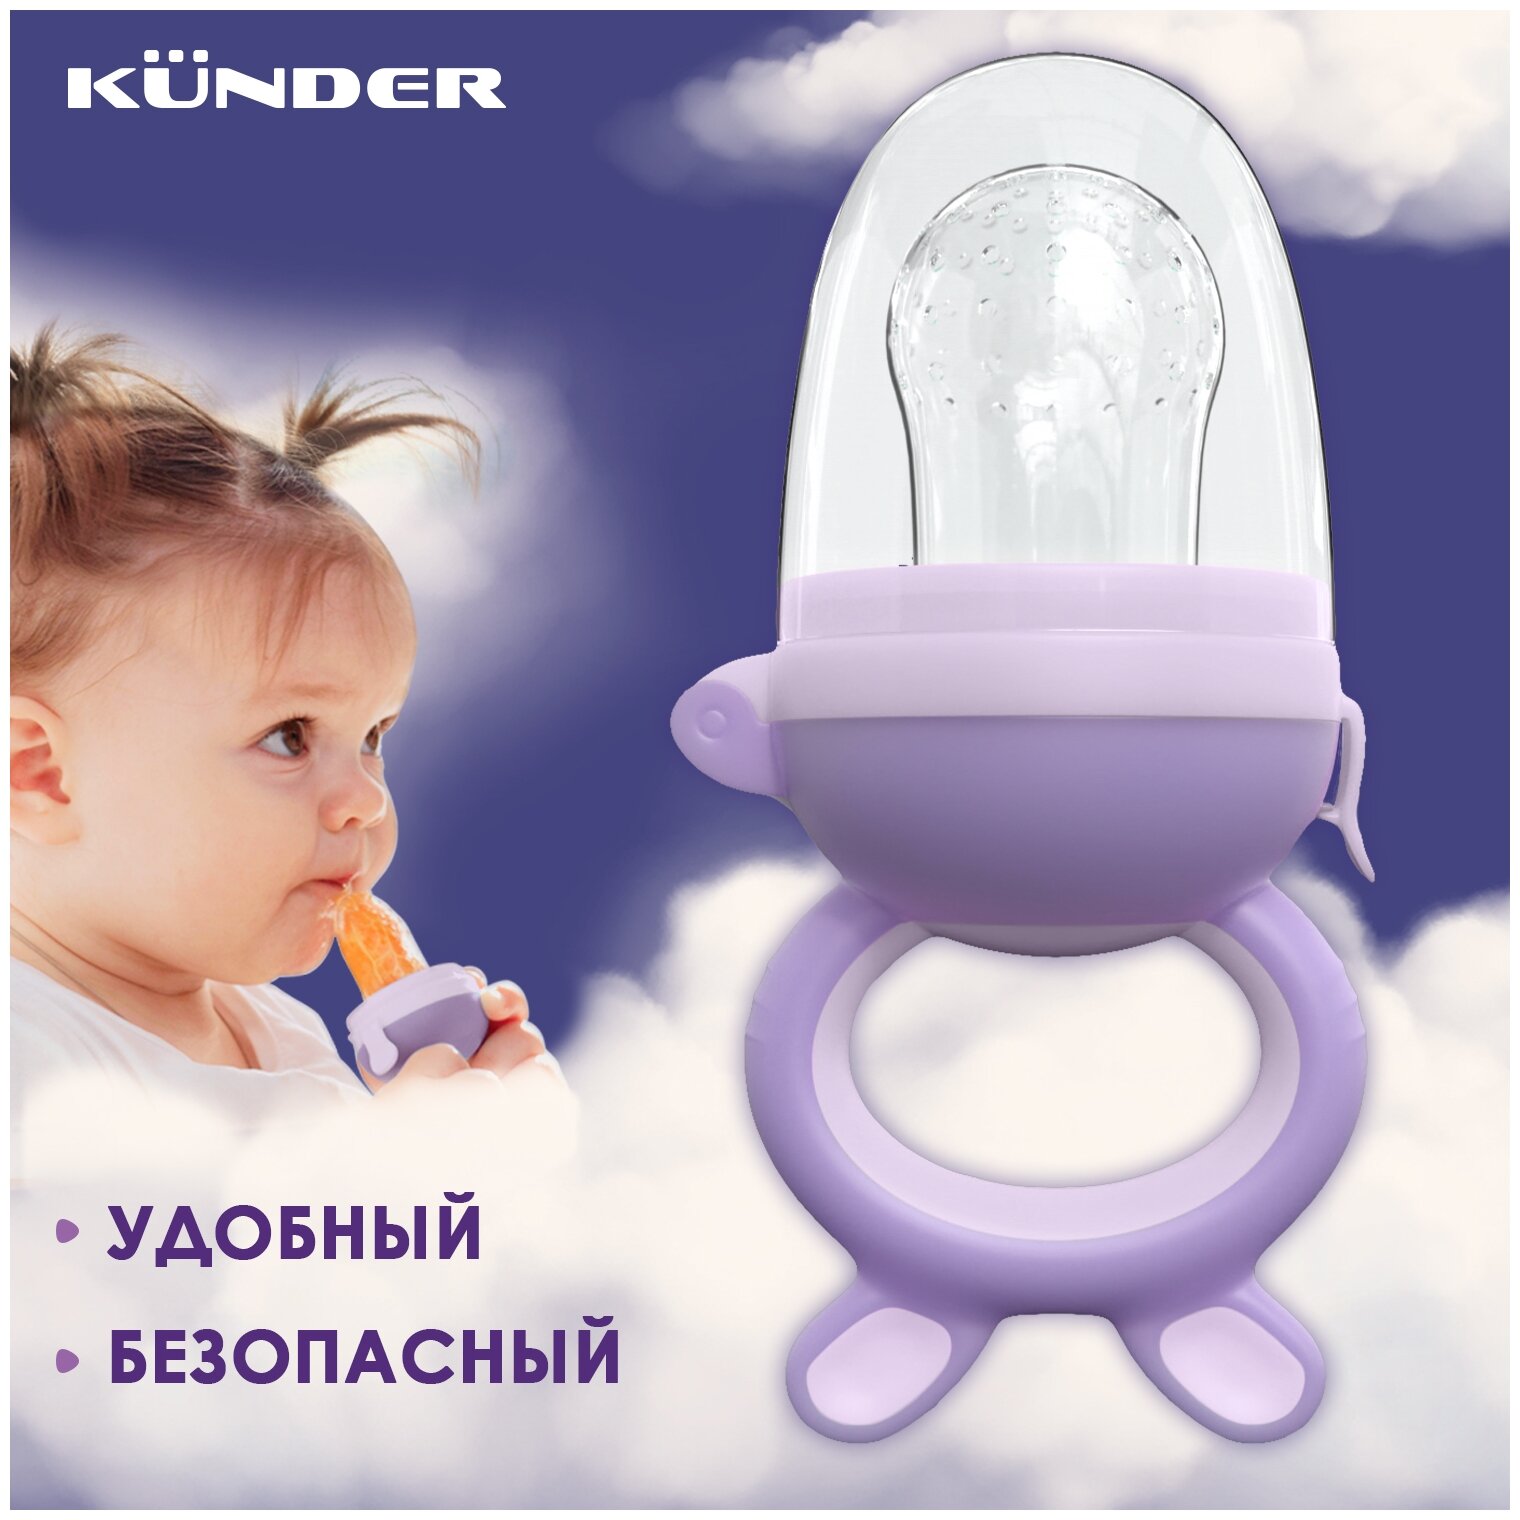 Ниблер Kunder силиконовый с сеточкой Happy Baby - фото №2